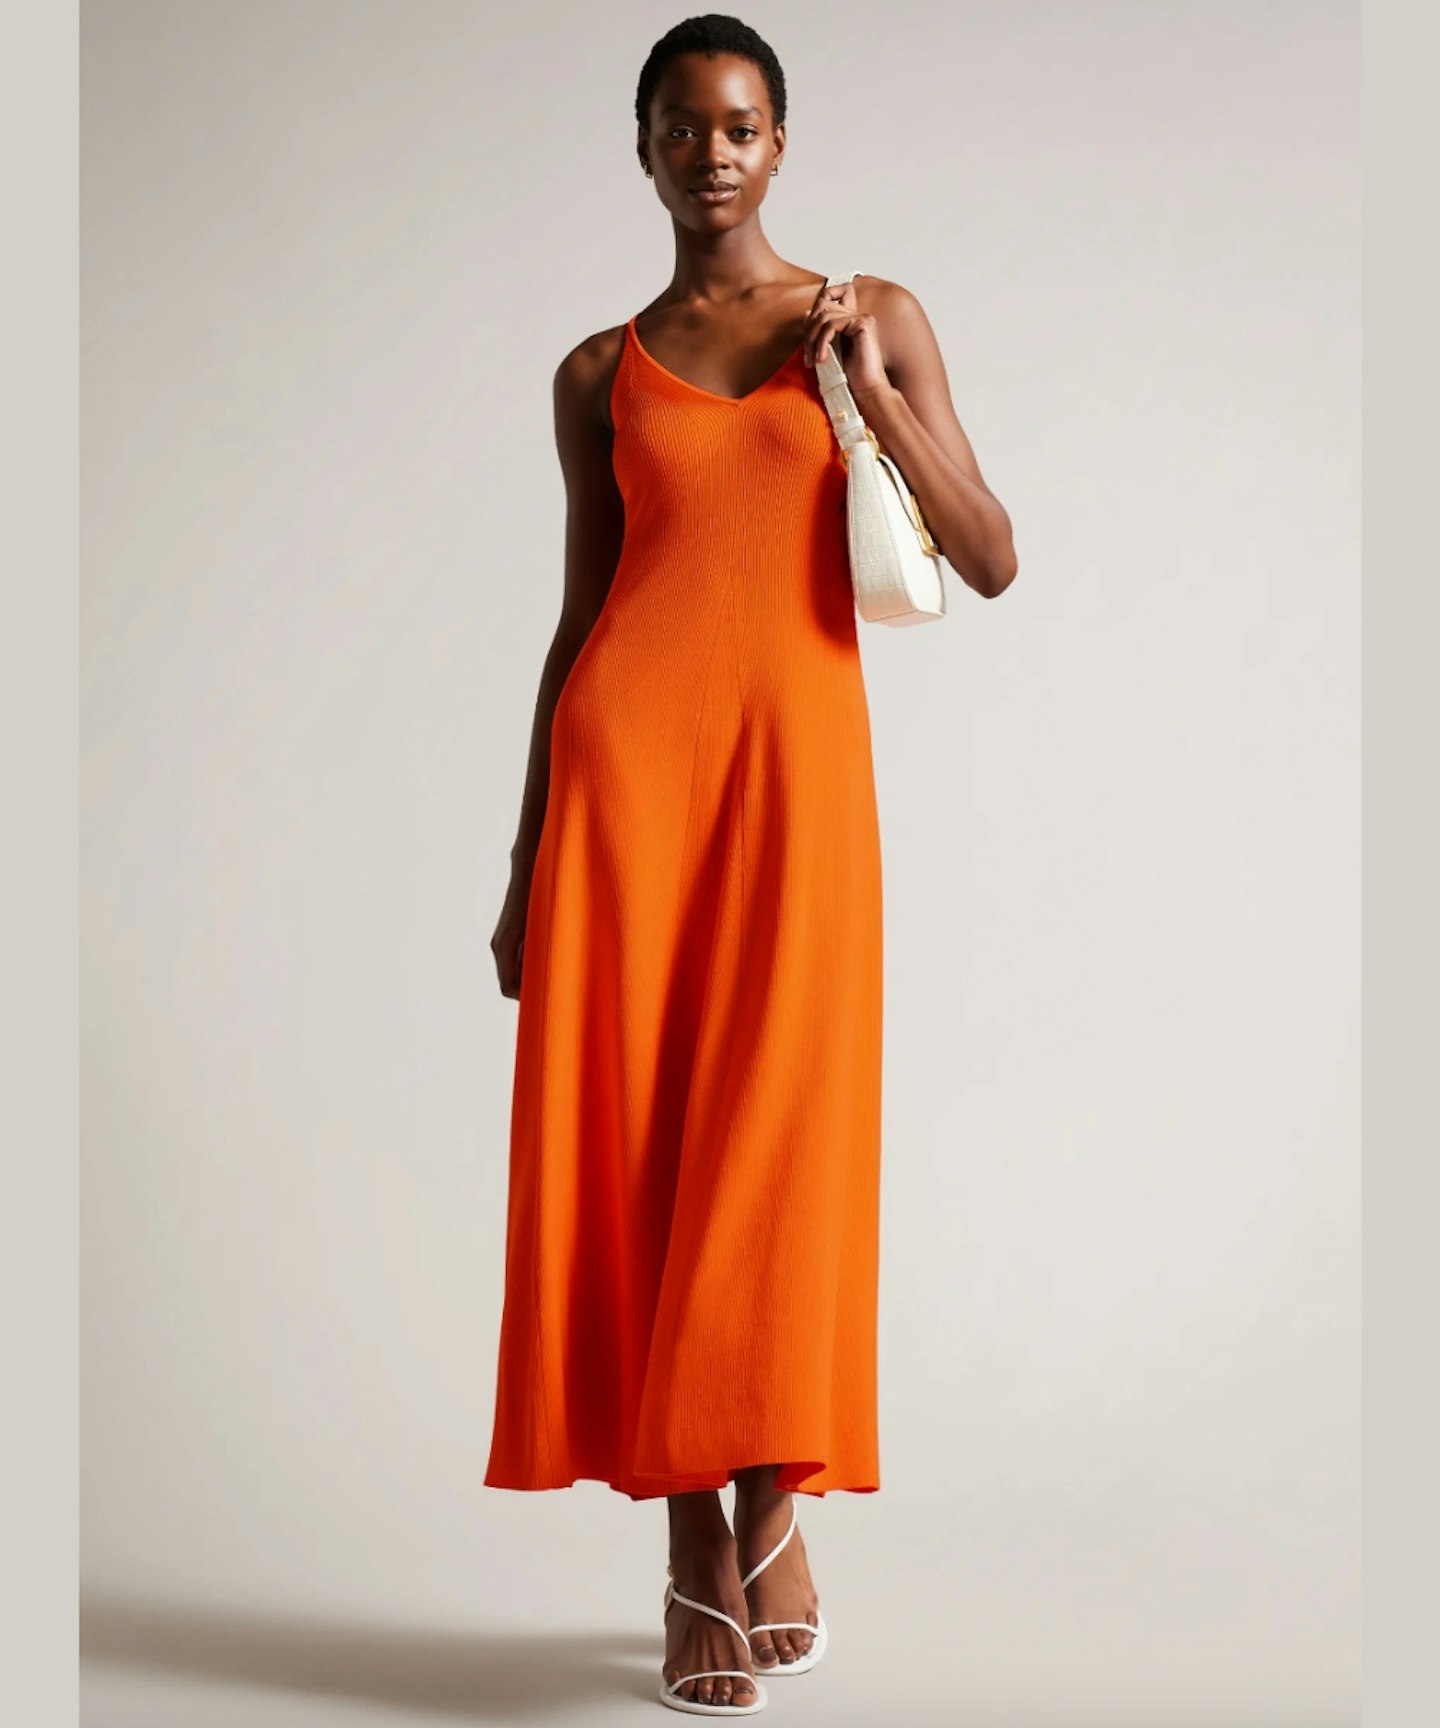 The Ted Baker Orange Dress